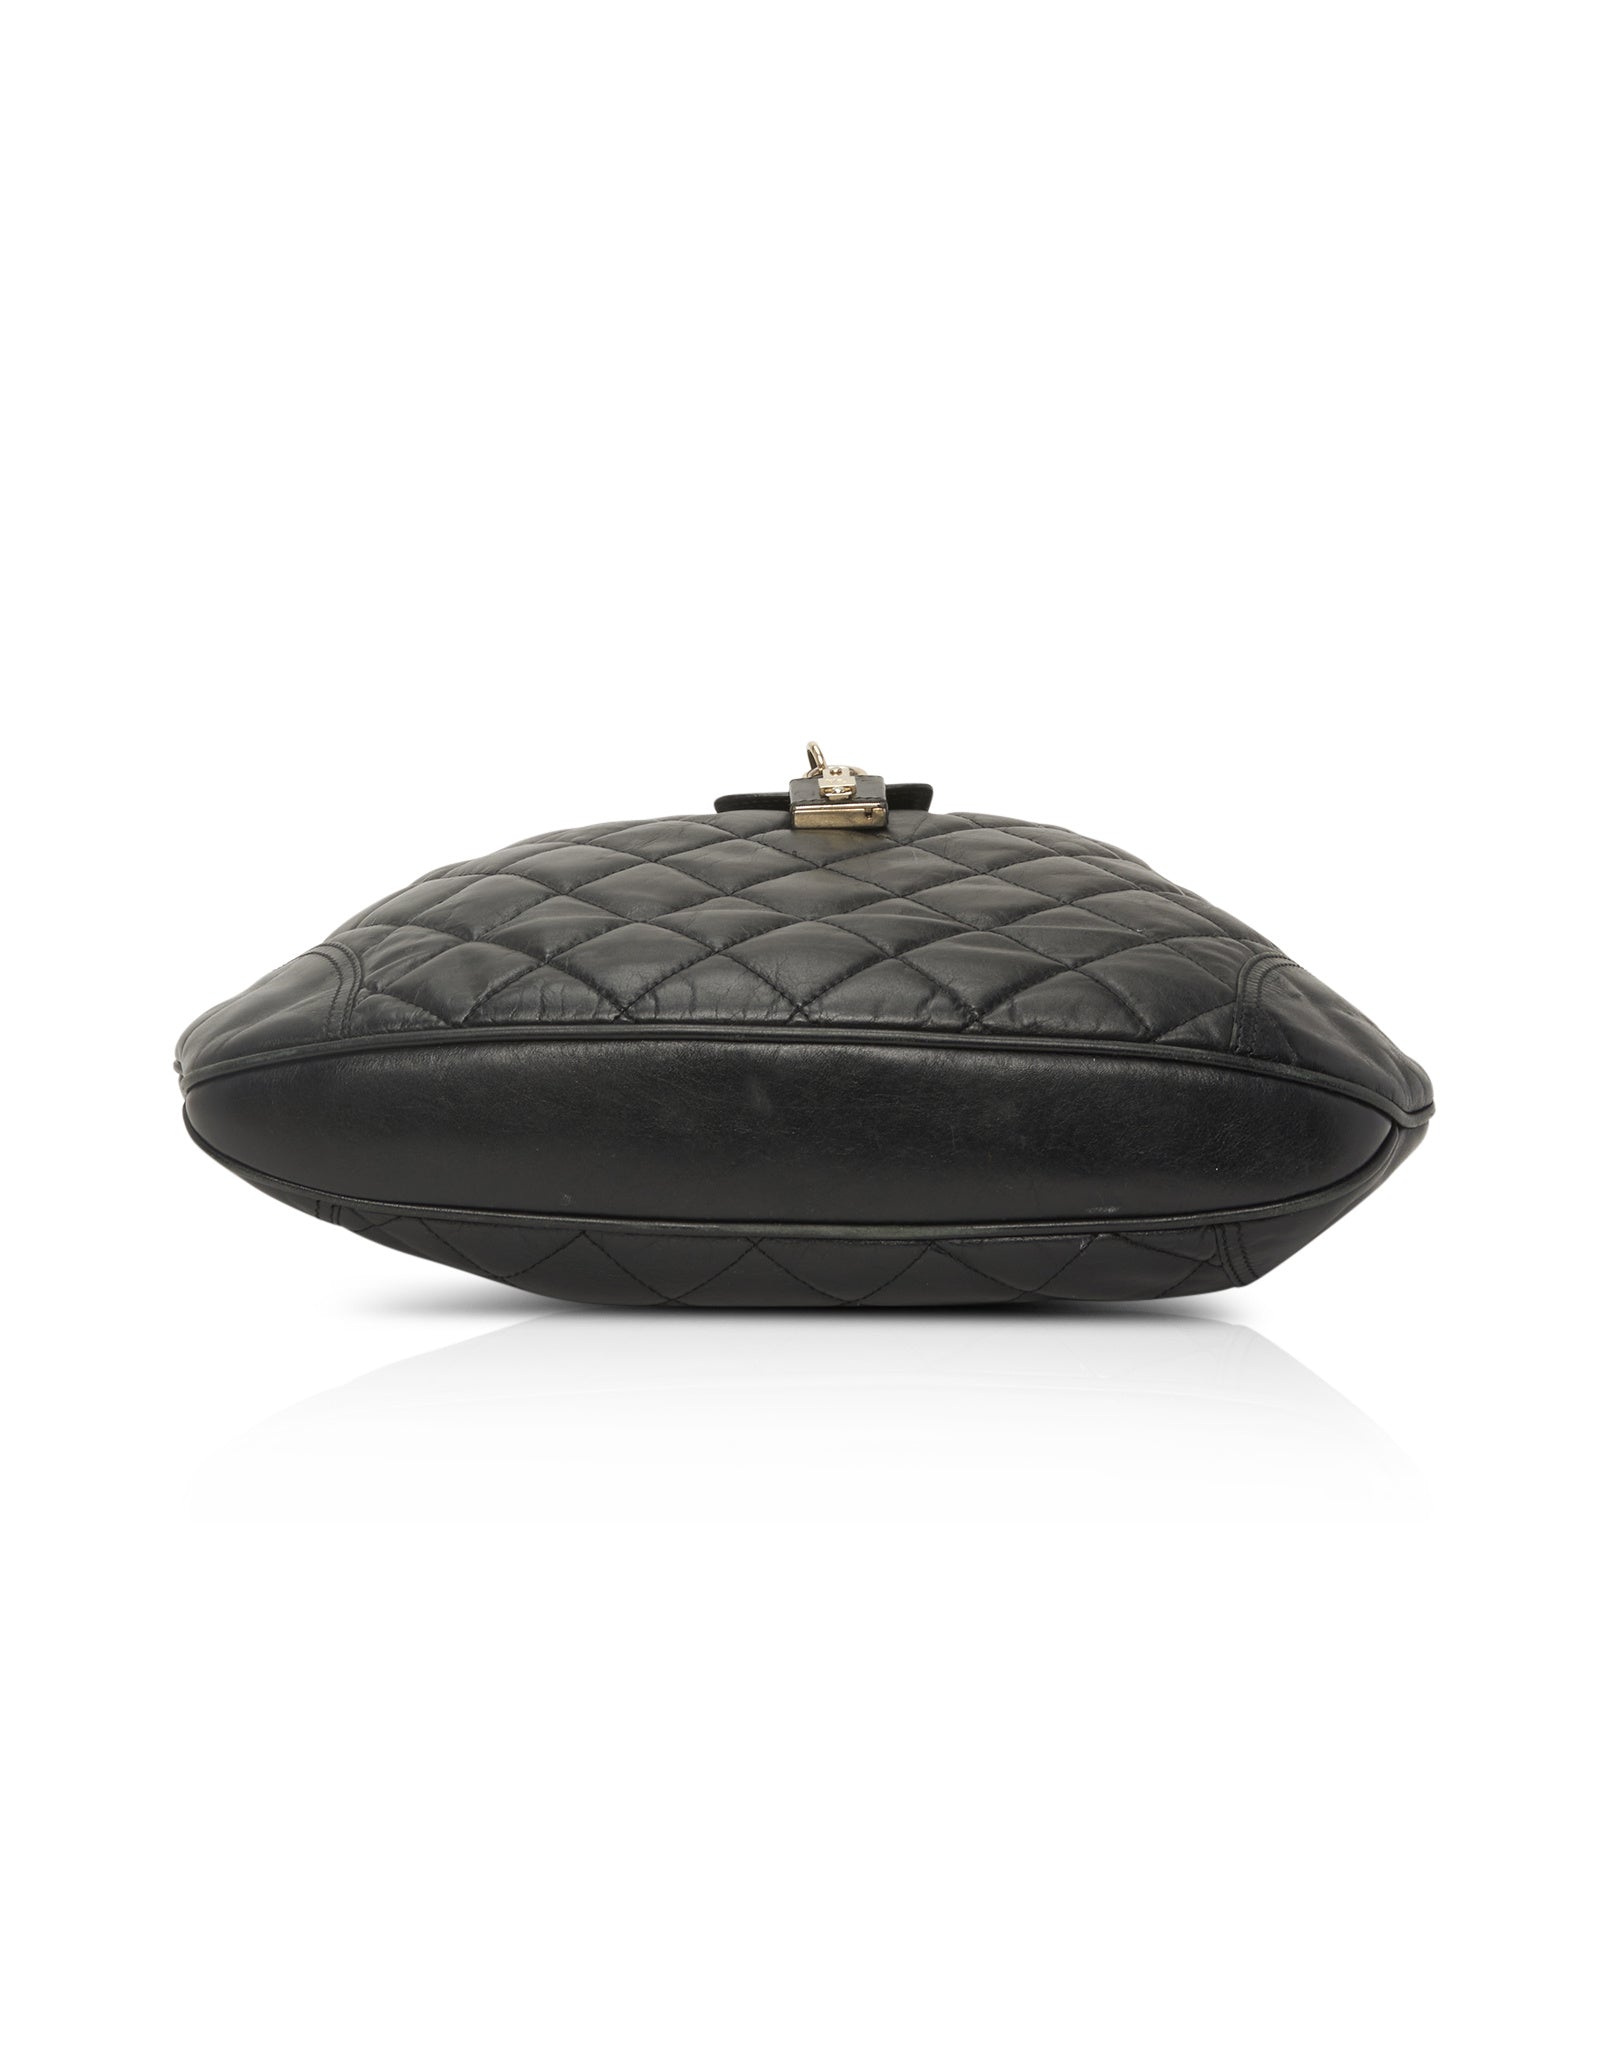 Burberry Black Leather Quilted Hobo Shoulder Bag